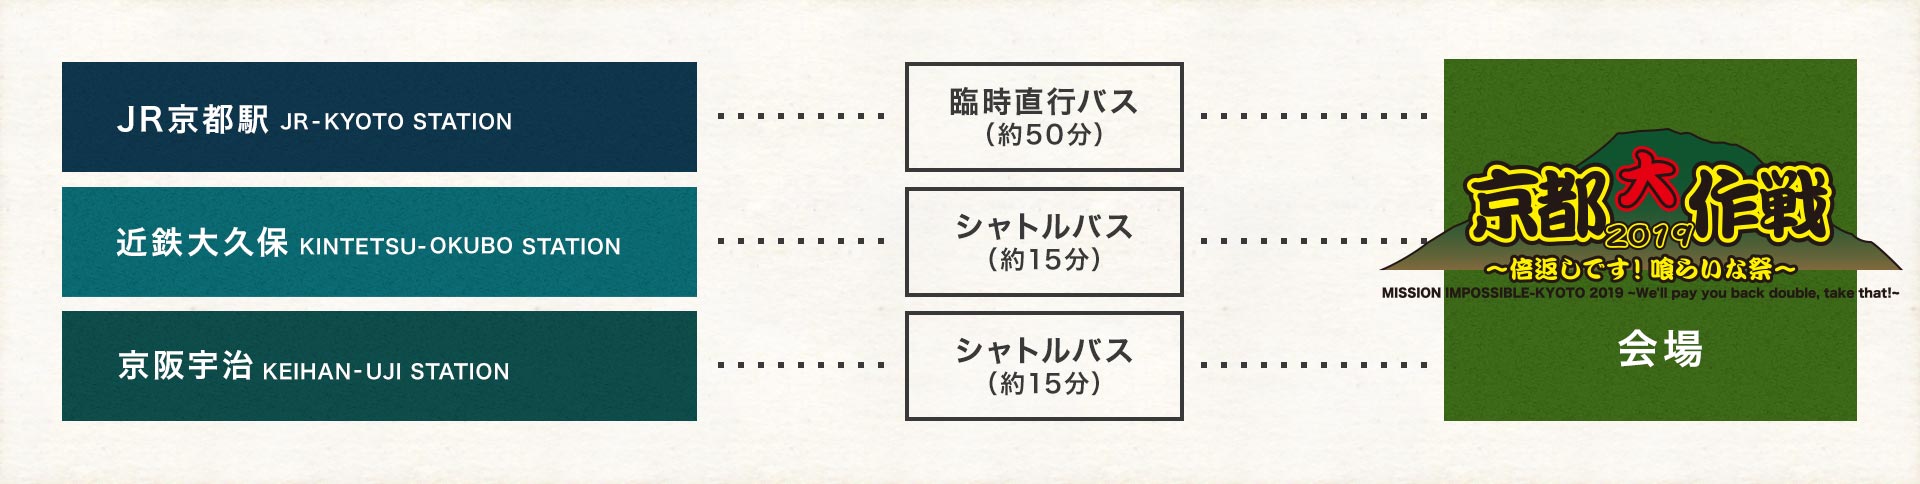 会場までのバスでのアクセス図:シャトルバスは近鉄大久保駅と京阪宇治駅から運行します。会場まで約15分です。臨時直行バスはJR京都駅から運行します。会場まで約50分です。